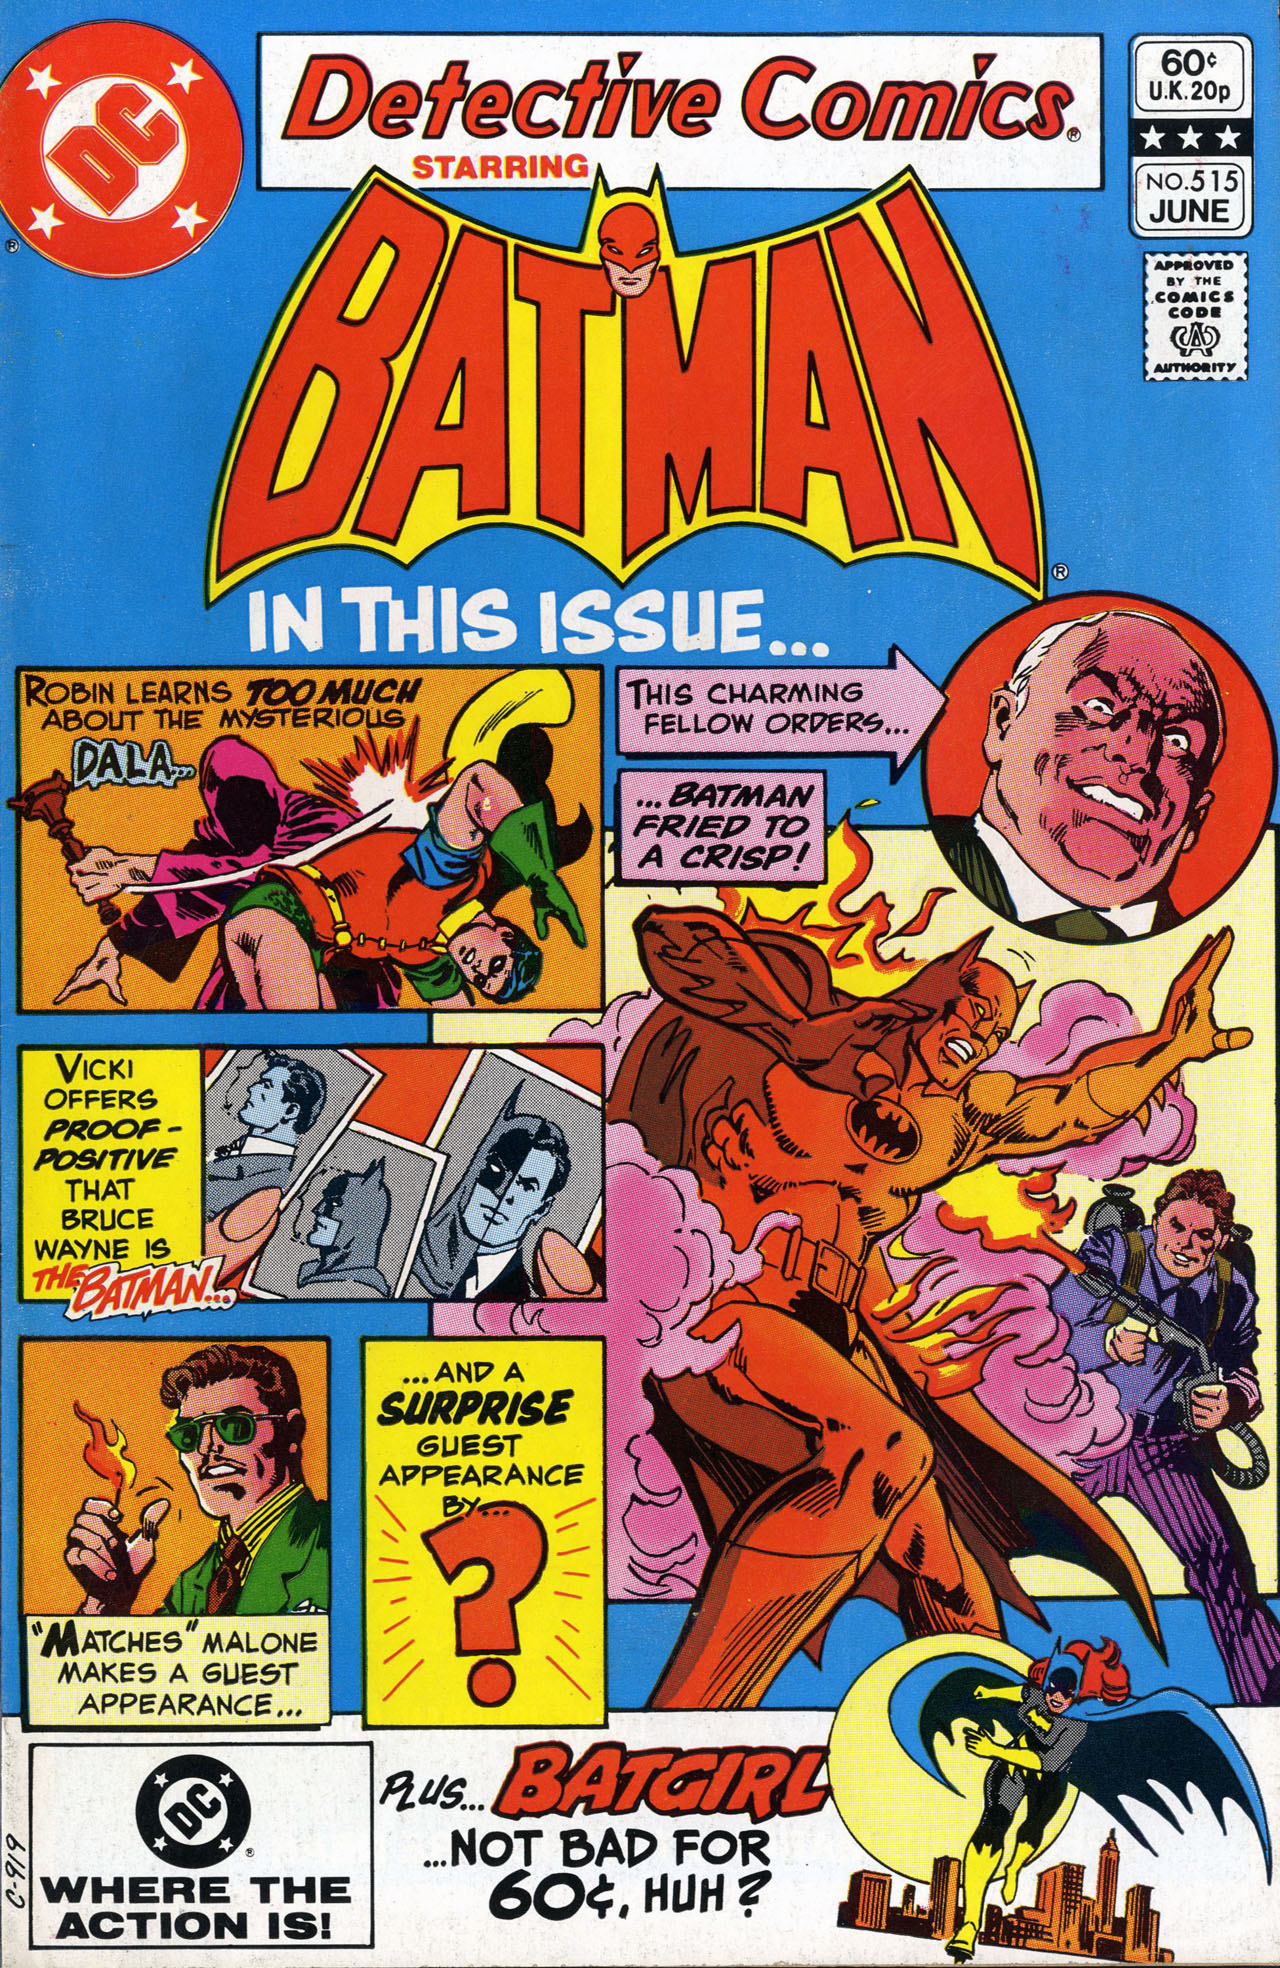 Detective Comics Vol 1 515 | DC Database | Fandom